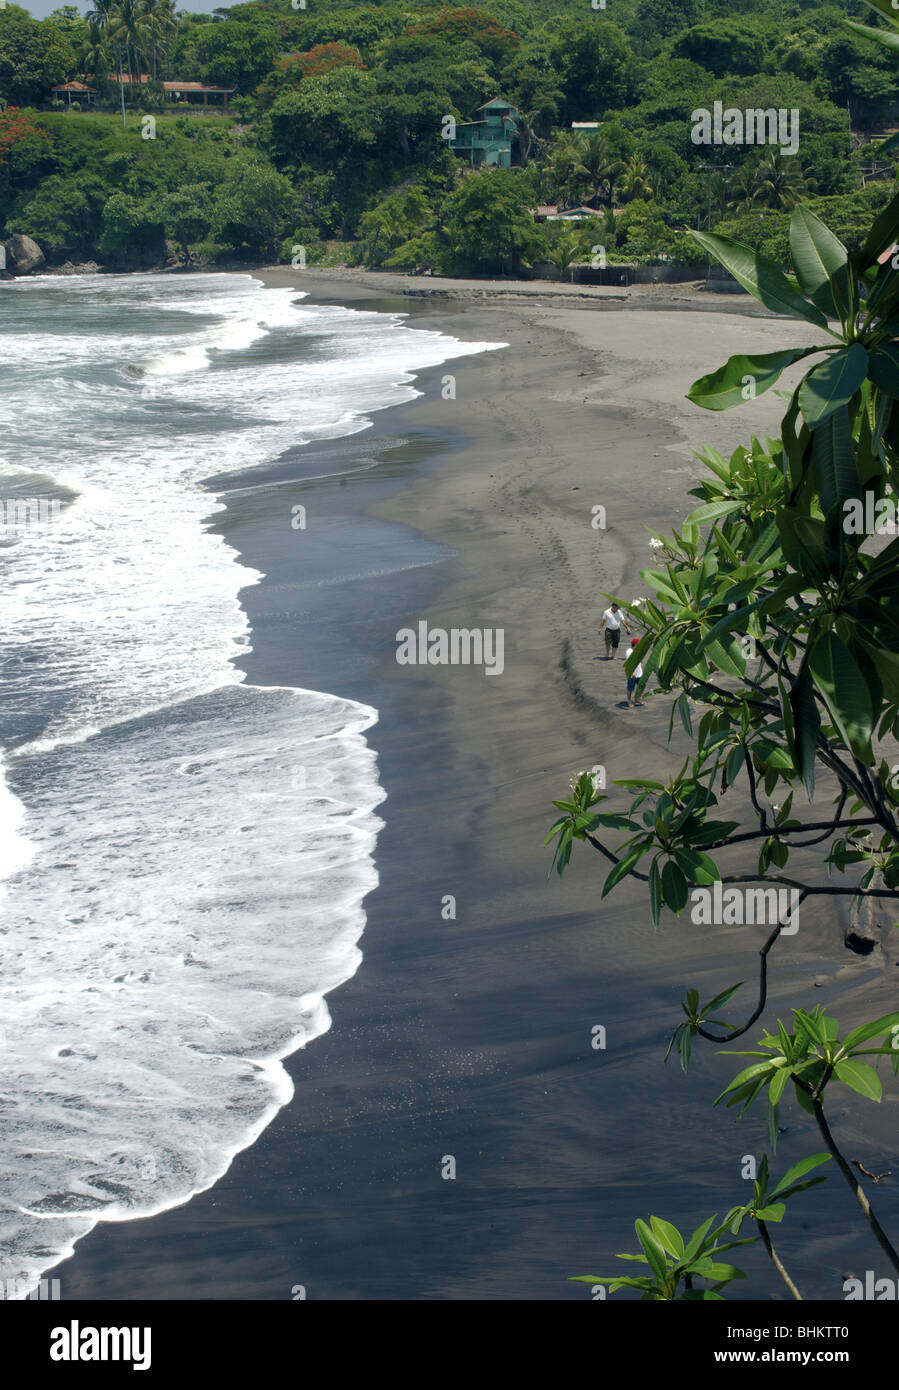 El Salvador. Der Strandclub Atami. Pazifischen Ozean. Abteilung La Libertad. Stockfoto